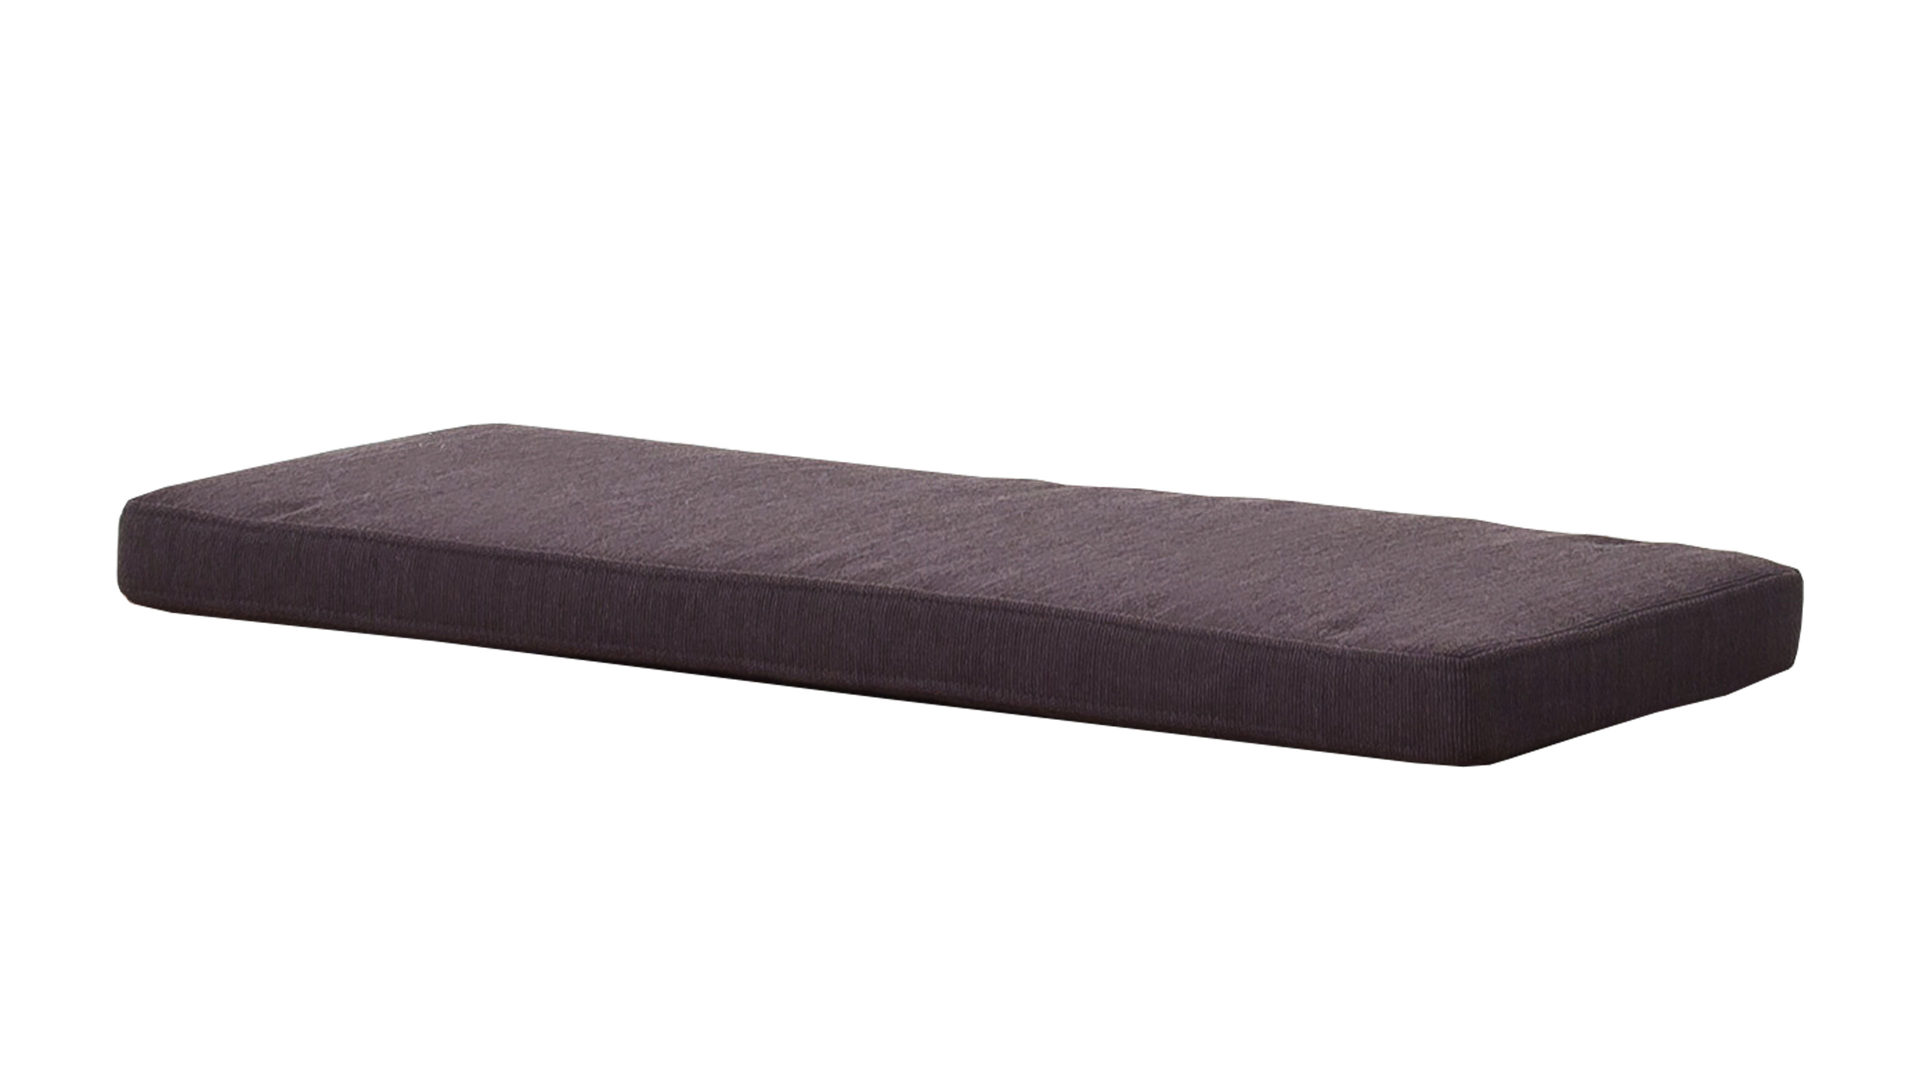 Sitzkissen Mca furniture aus Stoff in Grau Sitzkissen anthrazitfarbener Bezug – ca. 85 x 34 cm